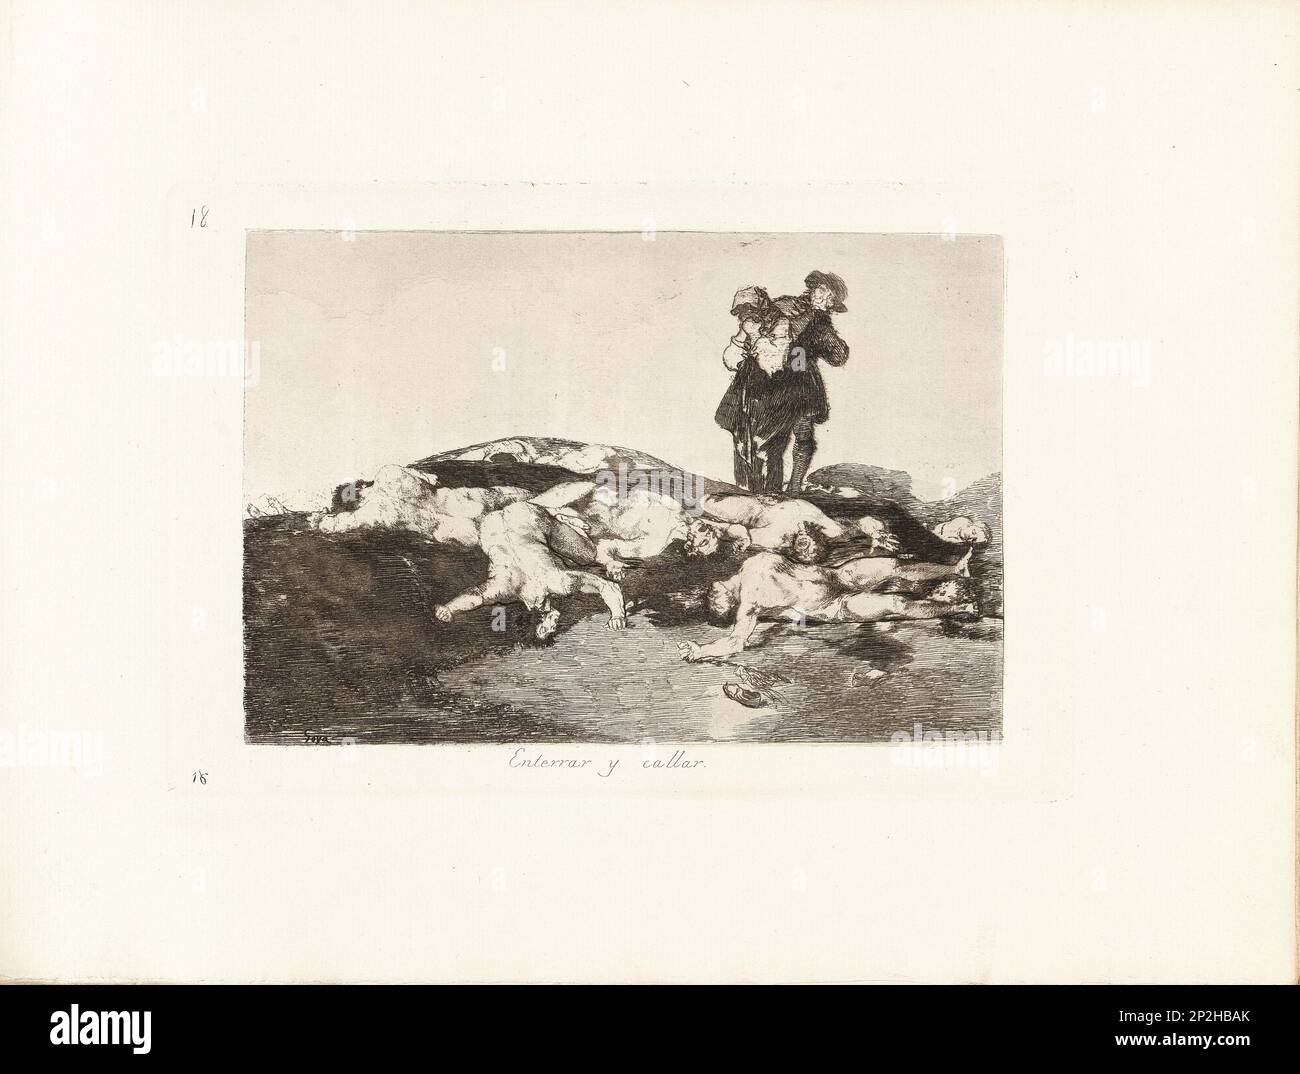 Los Desastres de la Guerra (The Disasters of War), Plate 18: Enterrar y callar (Bury them and keep quiet), 1810s. Private Collection. Stock Photo